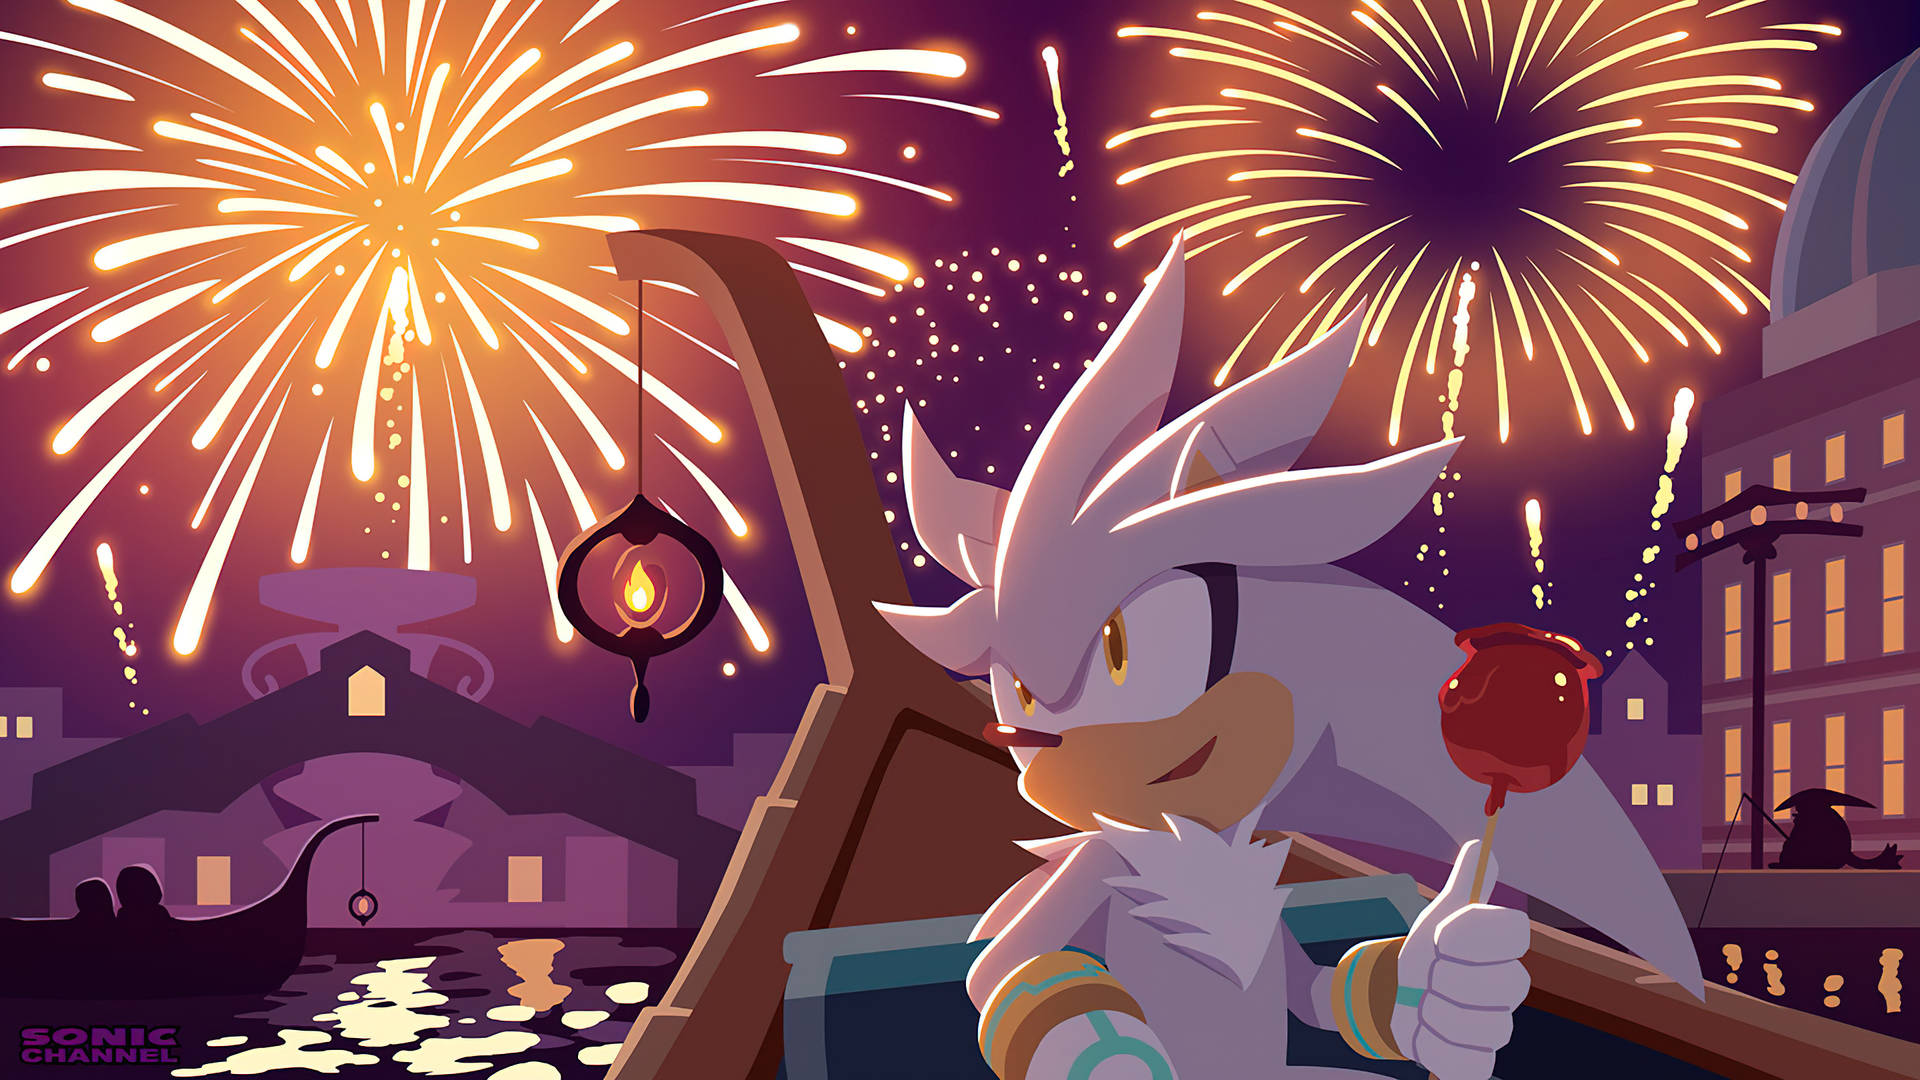 Silver The Hedgehog Under Fireworks Background